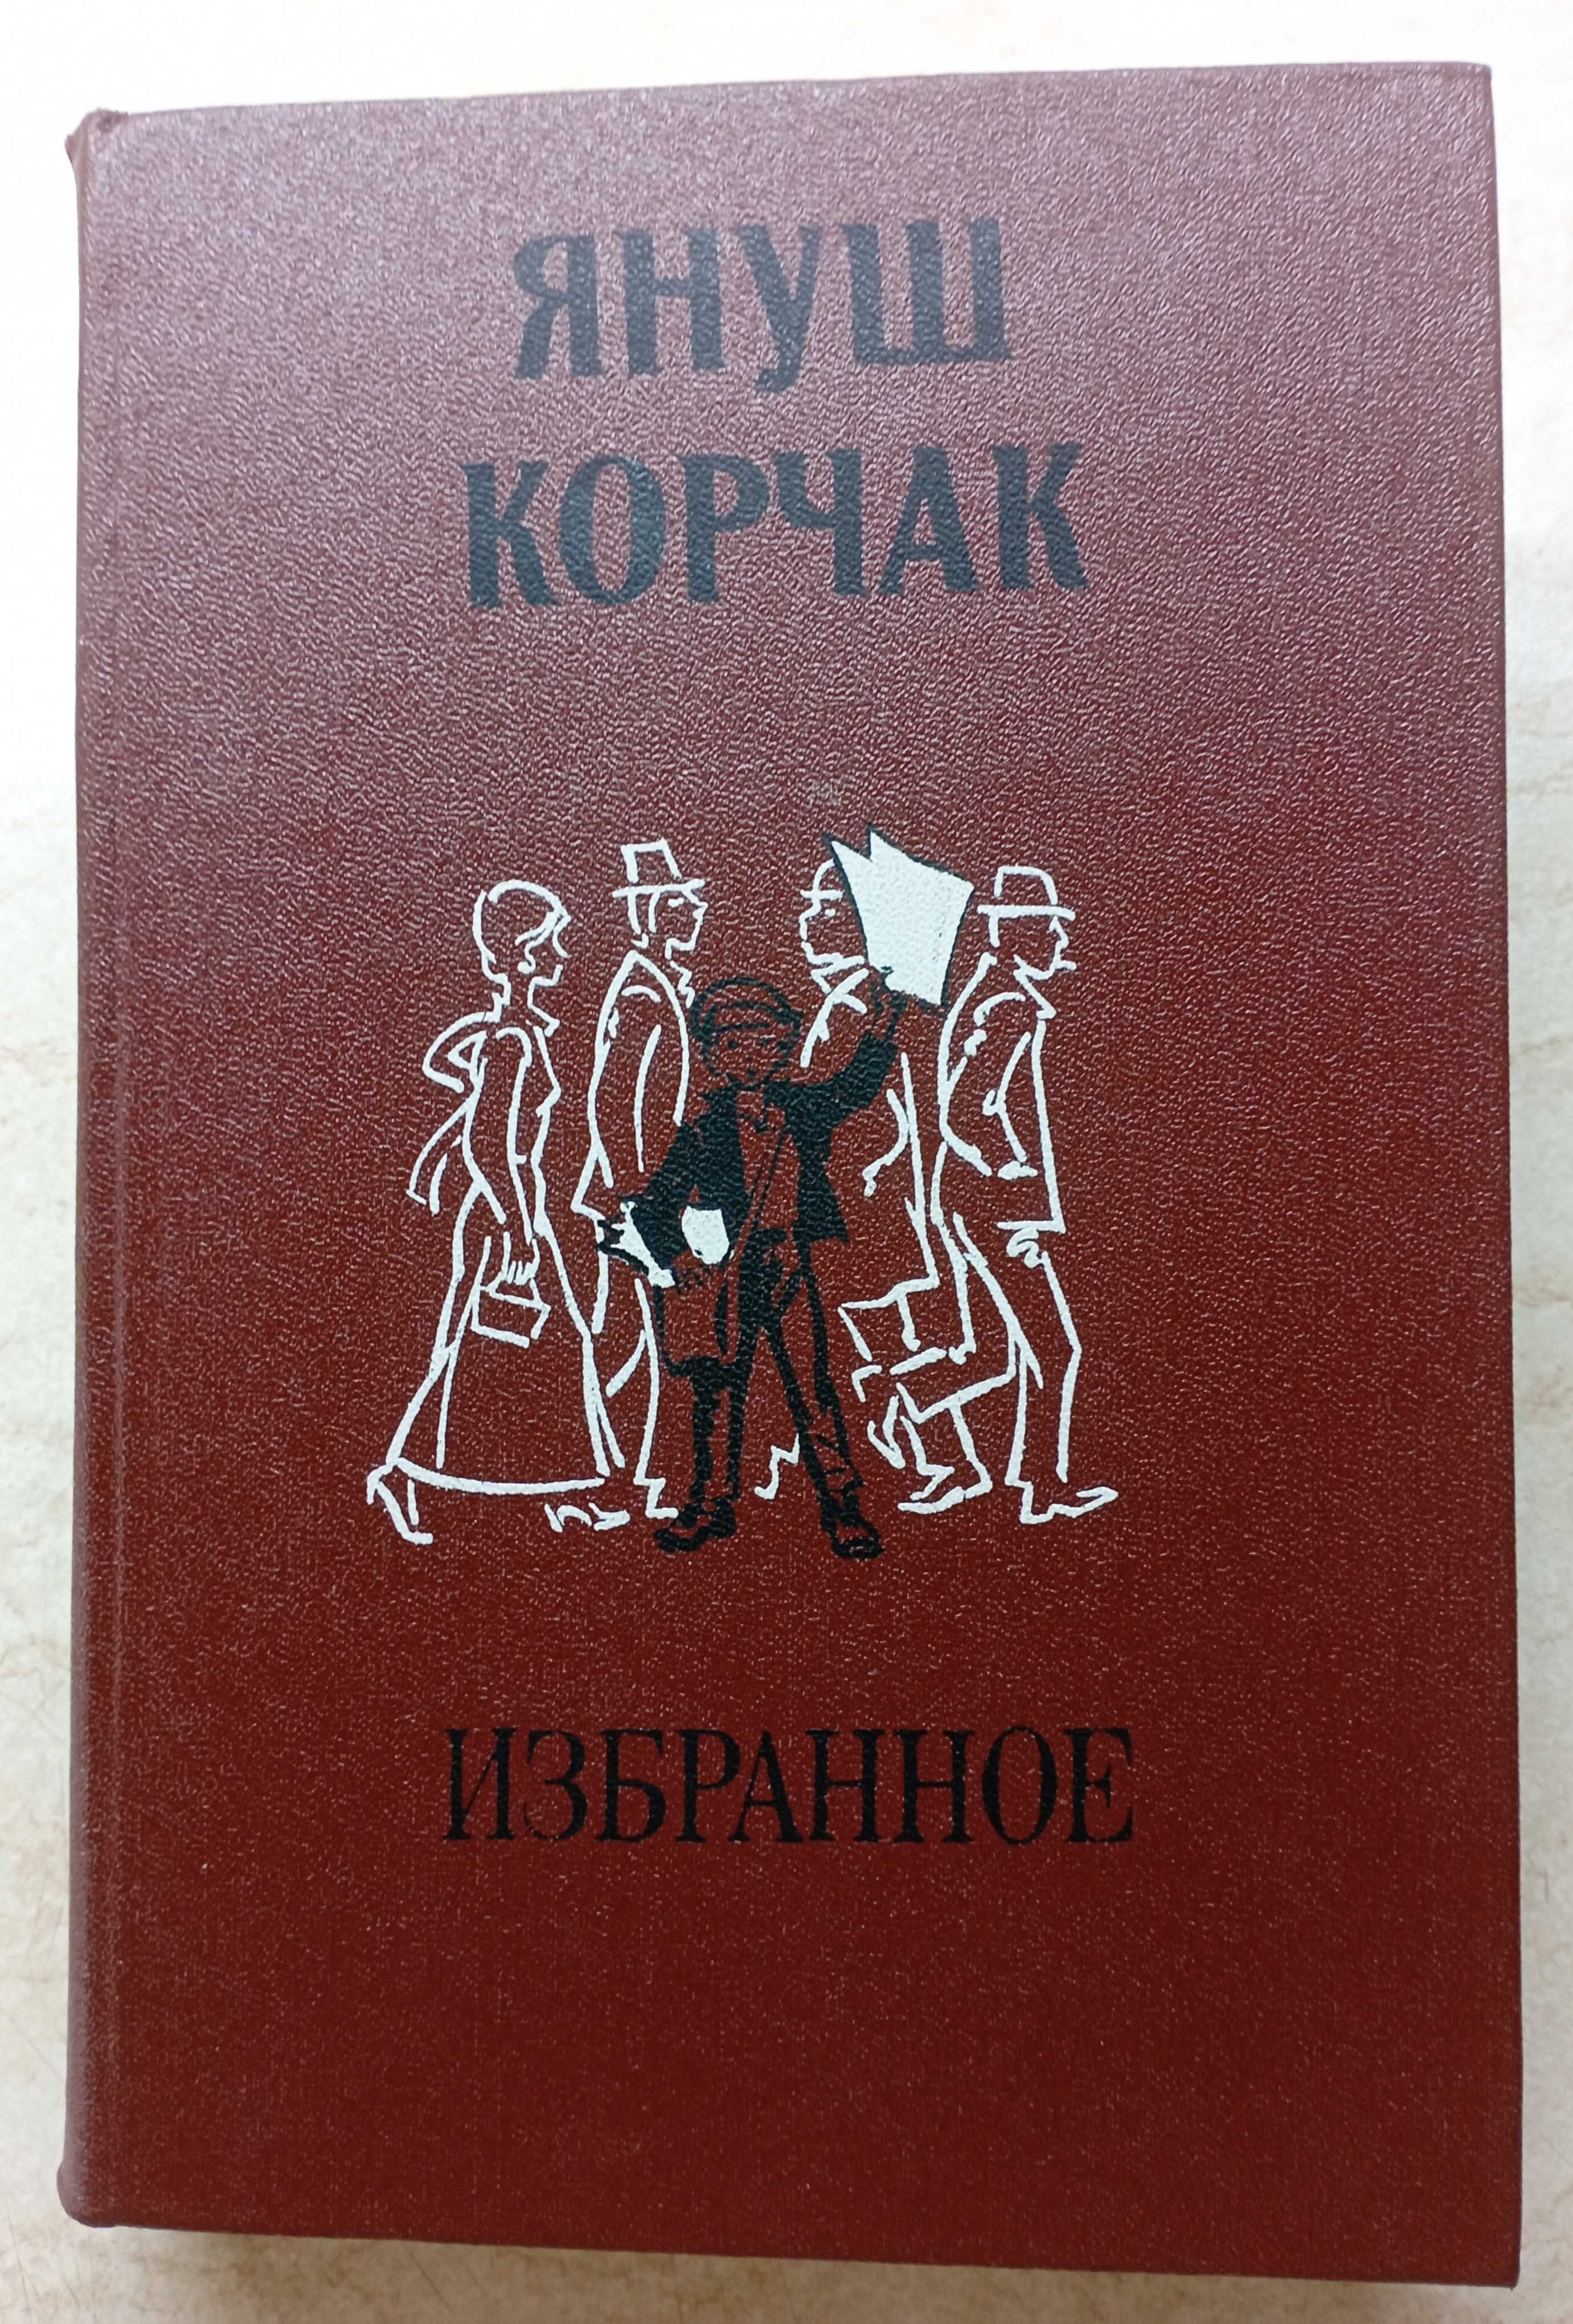 Я.Корчак "Пригоди Короля Мацюся". Божена Немцова. Книги .